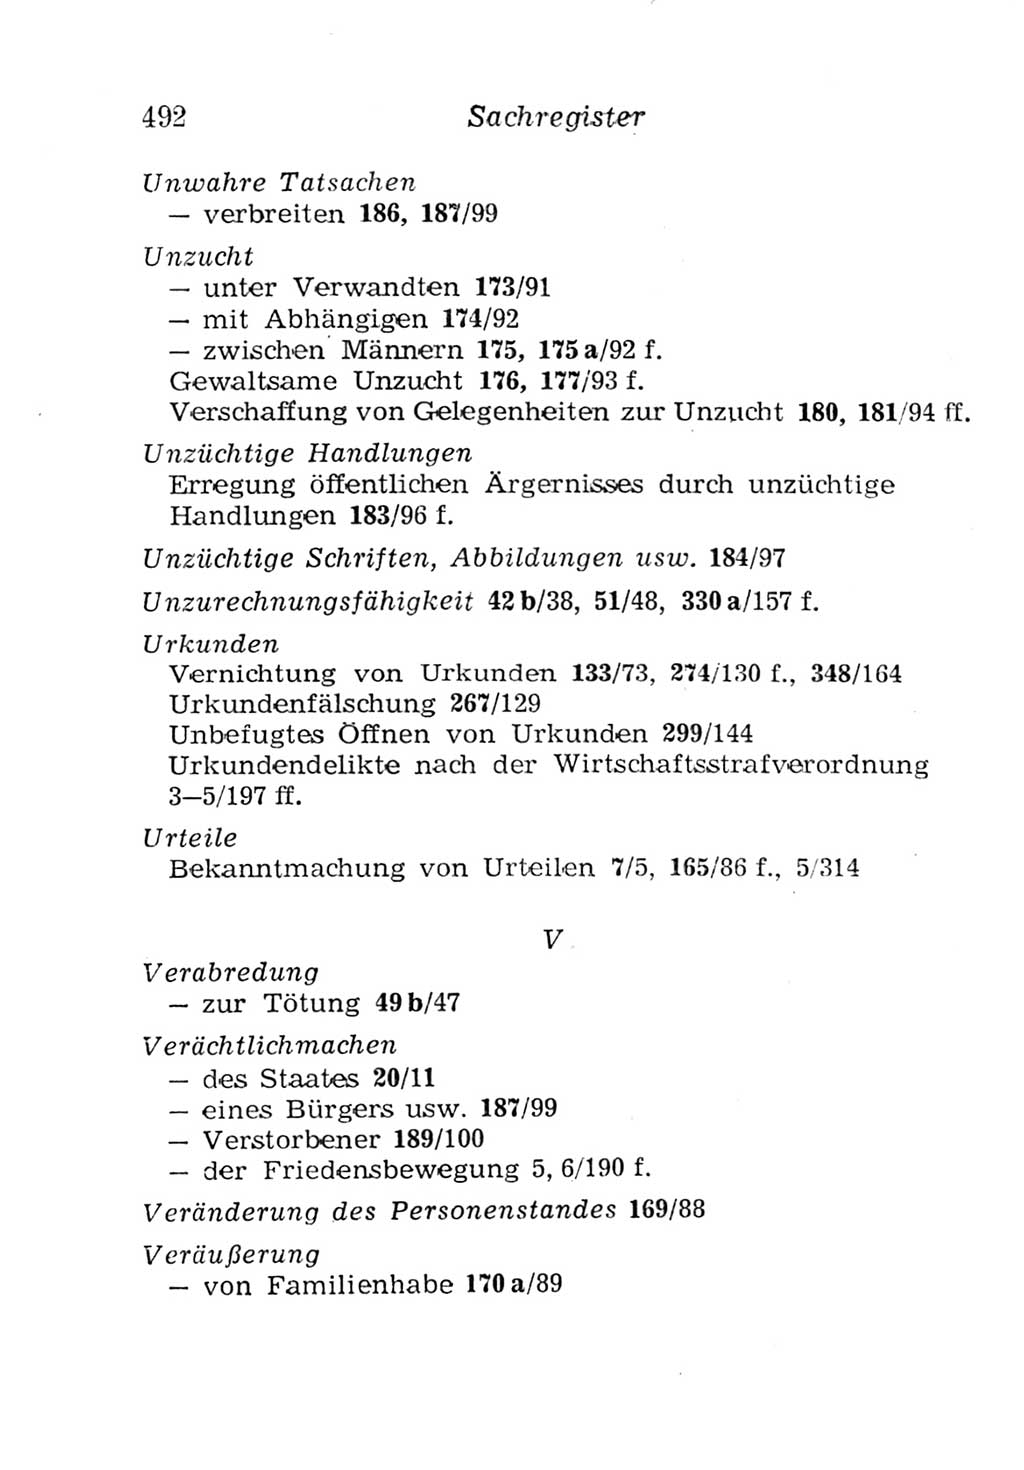 Strafgesetzbuch (StGB) und andere Strafgesetze [Deutsche Demokratische Republik (DDR)] 1957, Seite 492 (StGB Strafges. DDR 1957, S. 492)